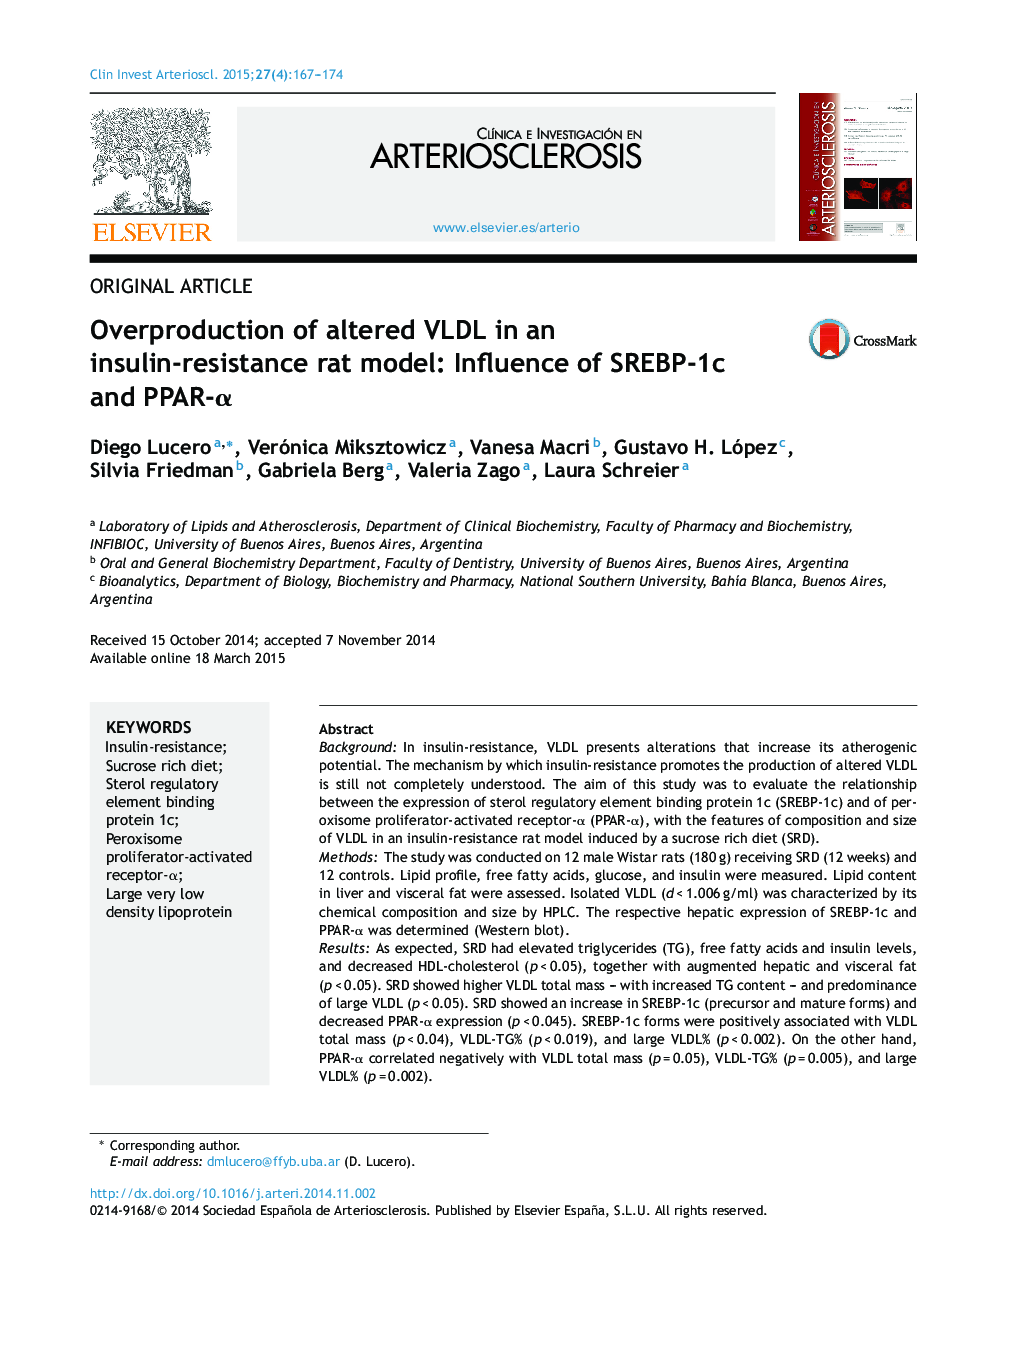 Overproduction of altered VLDL in an insulin-resistance rat model: Influence of SREBP-1c and PPAR-α